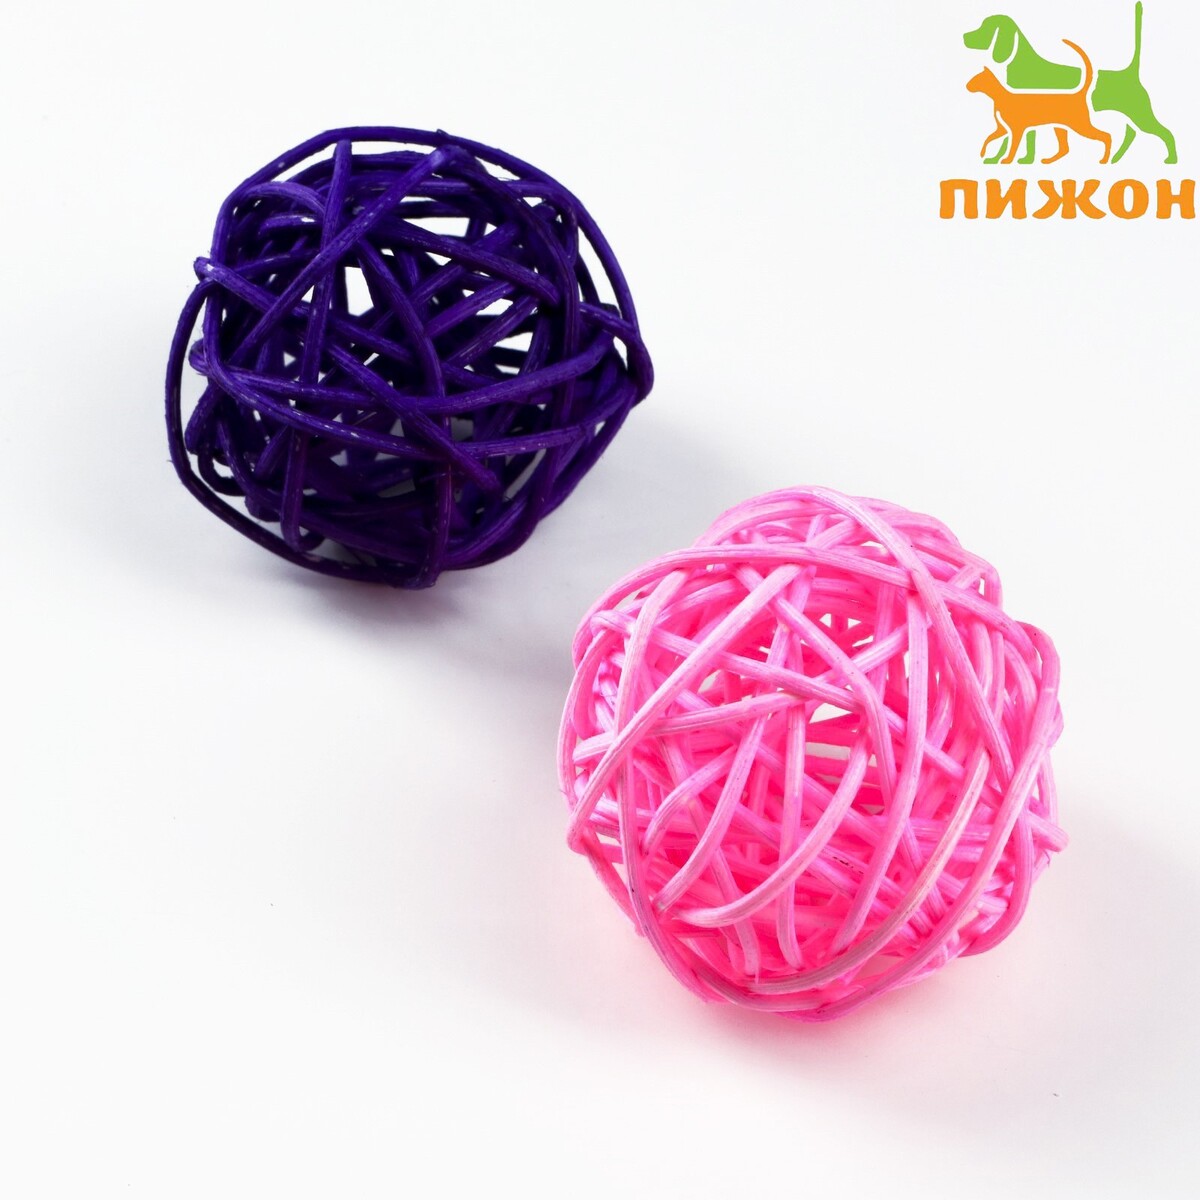 Набор из 2 плетеных шариков из лозы без бубенчиков, 5 см, фиолетовый/розовый набор плетеных корзин для хранения ручной работы ladо́m